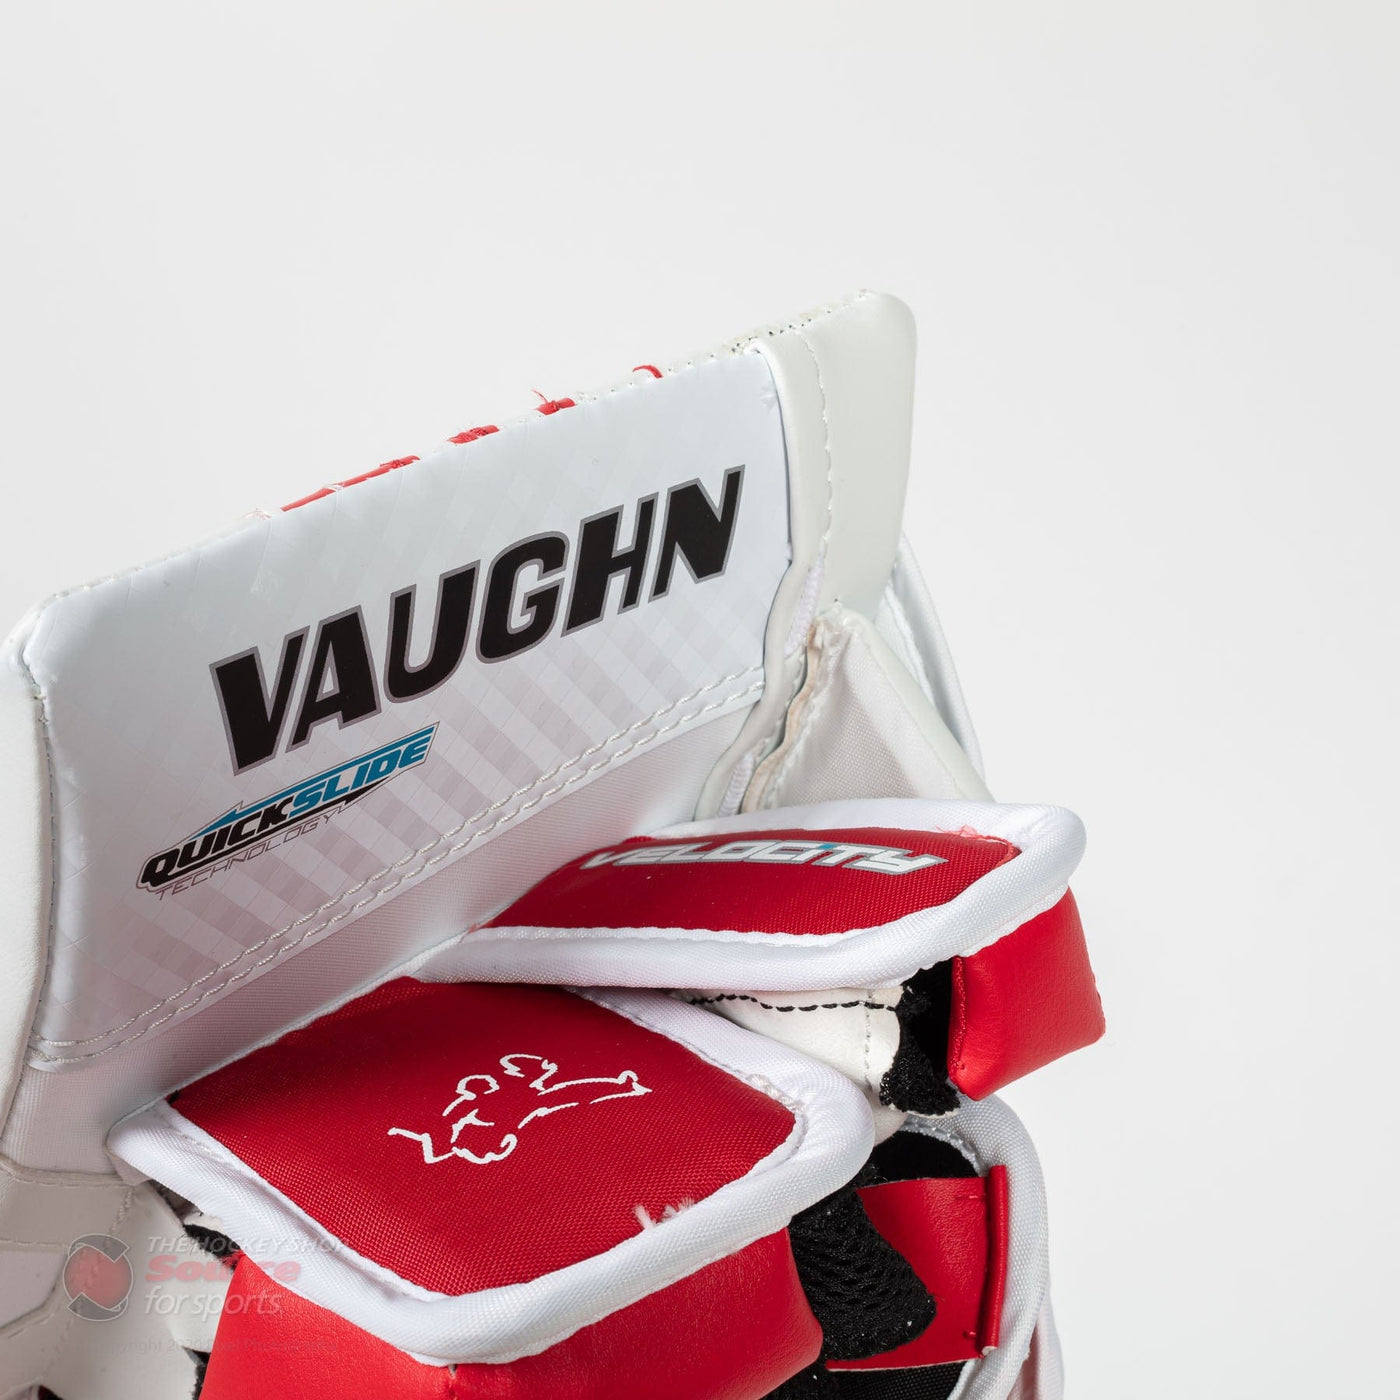 Vaughn Velocity V9 Junior Goalie Blocker